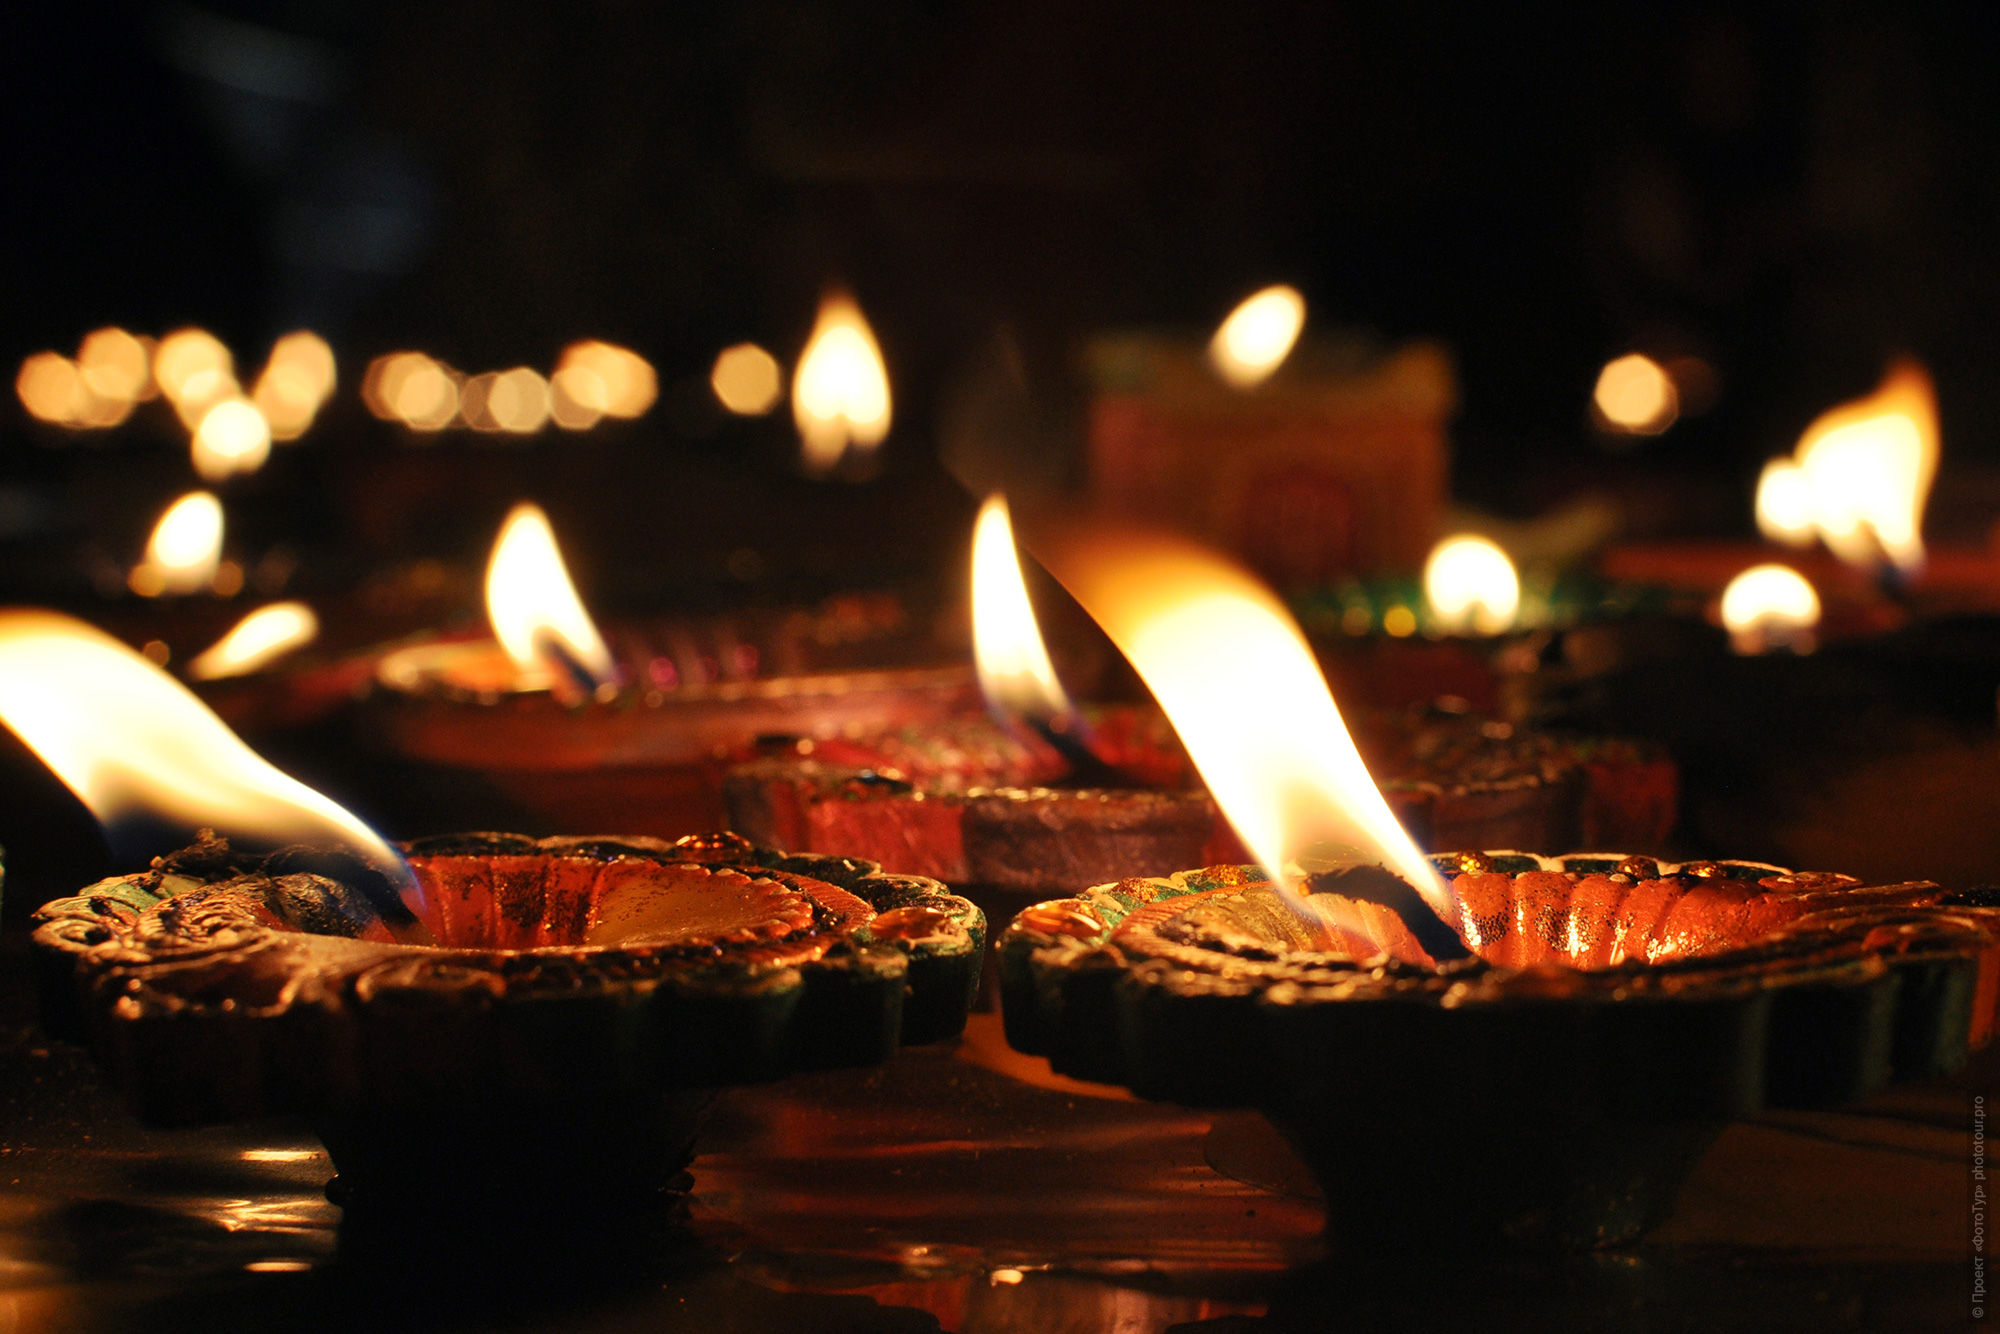 Масляные Лампы с маслом гхи в праздник Дивали в Индии, 2016 год.